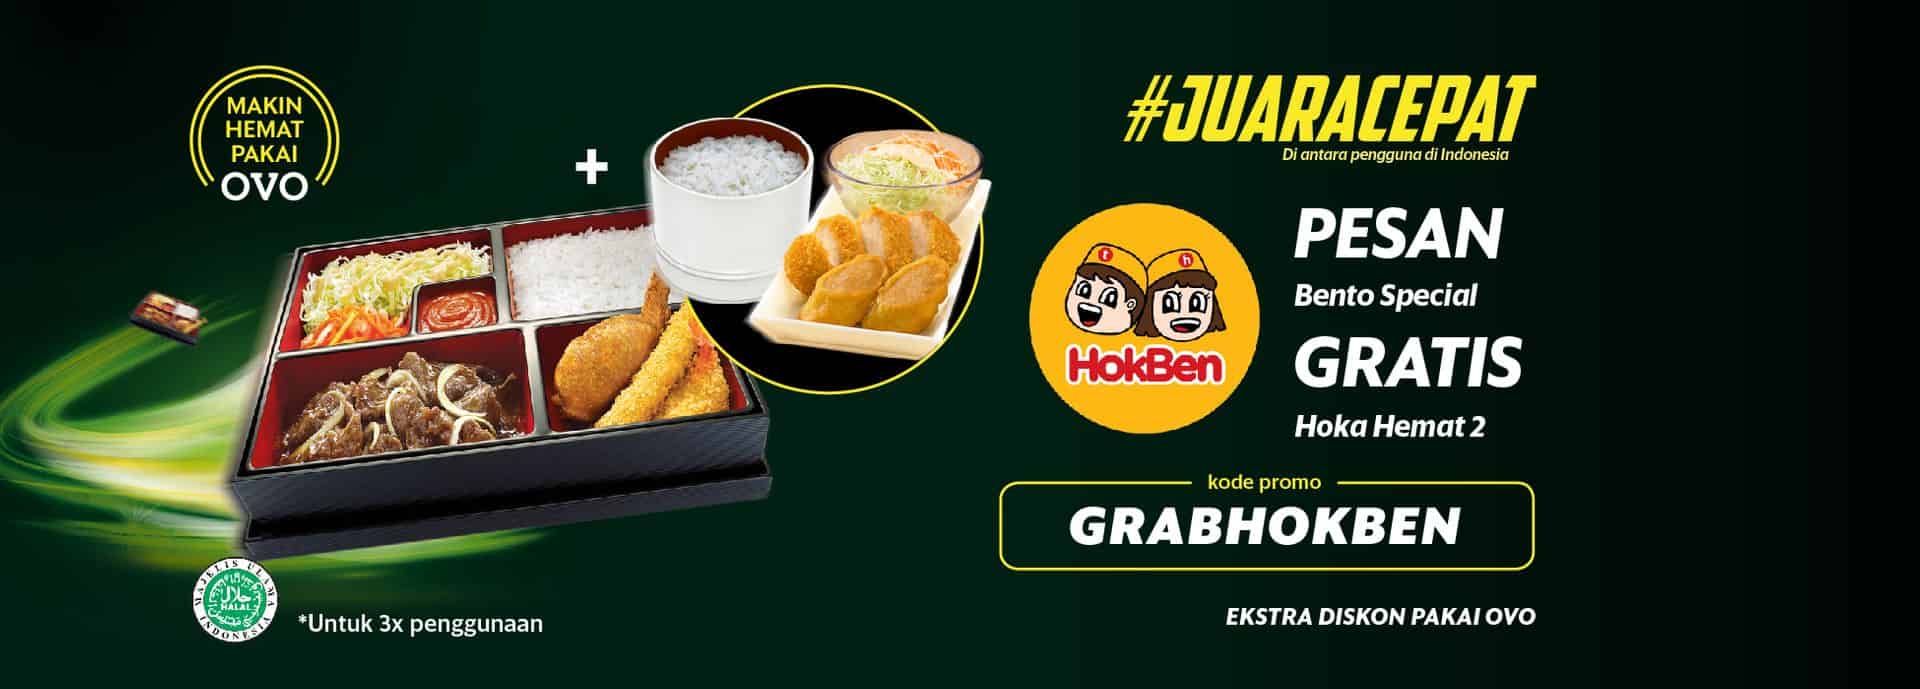 Bisnis Makanan Online Rumahan Grabfood 2019 ...